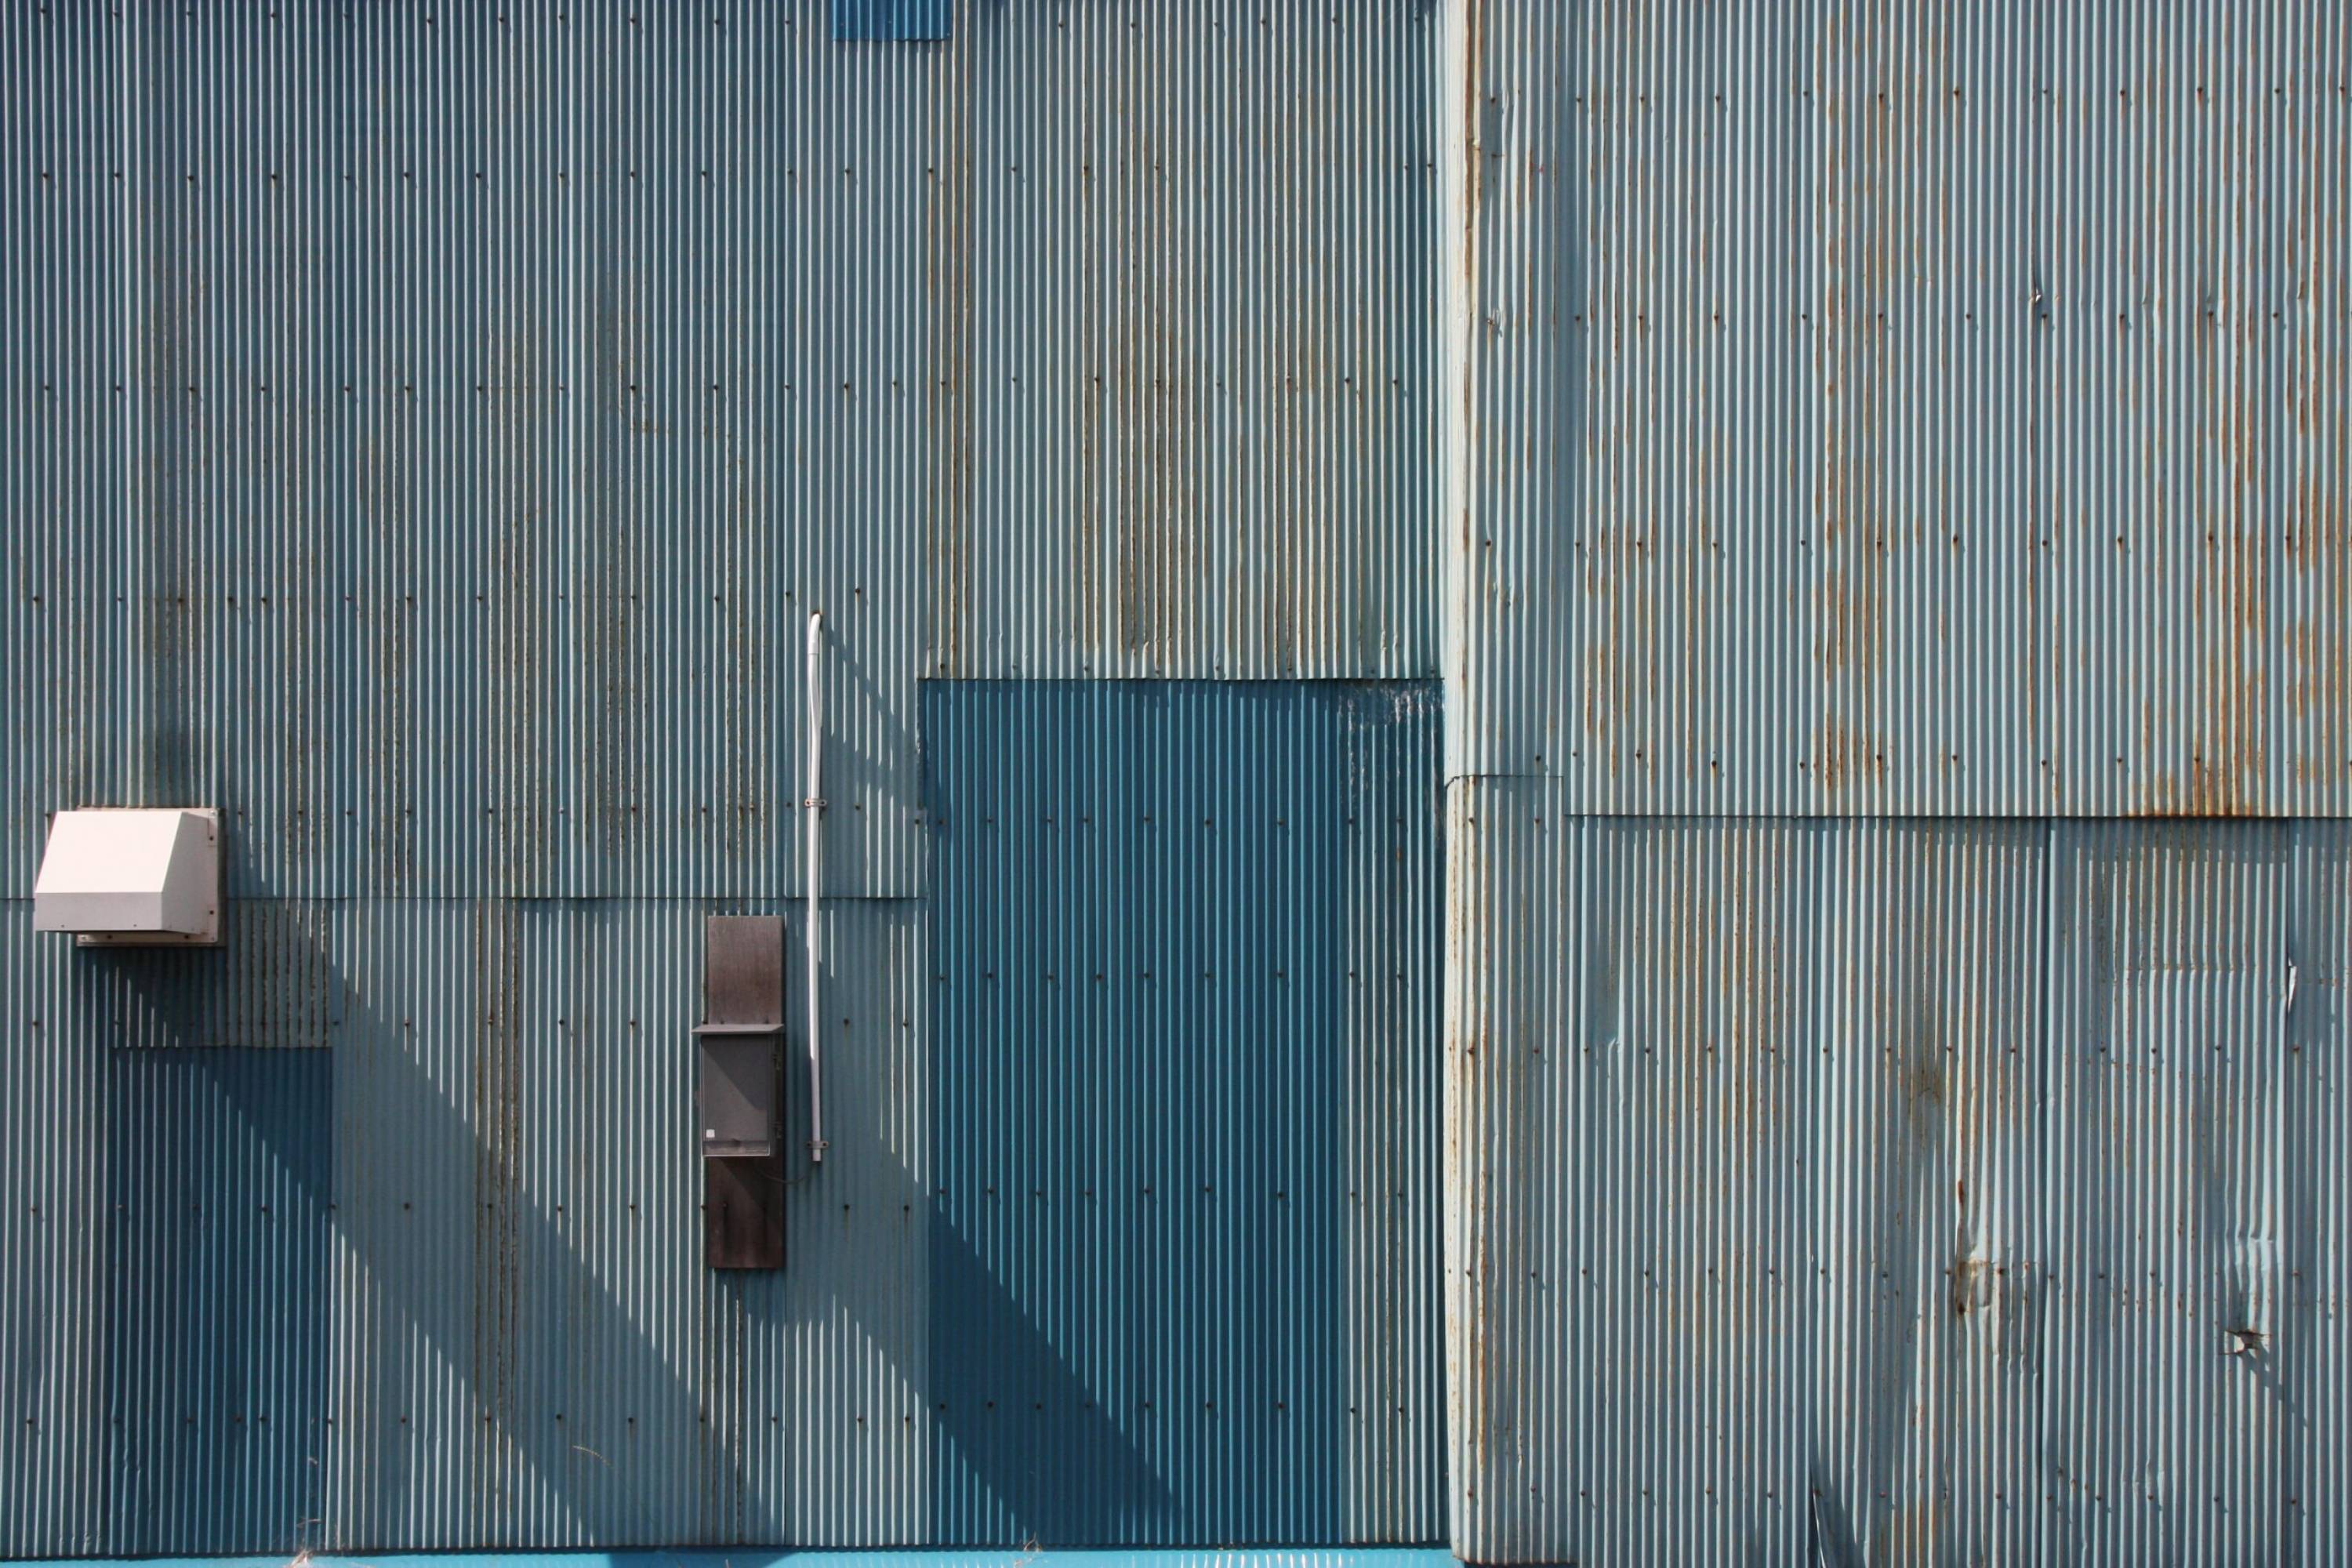 Site industriel d'Evialis, Vertou, France